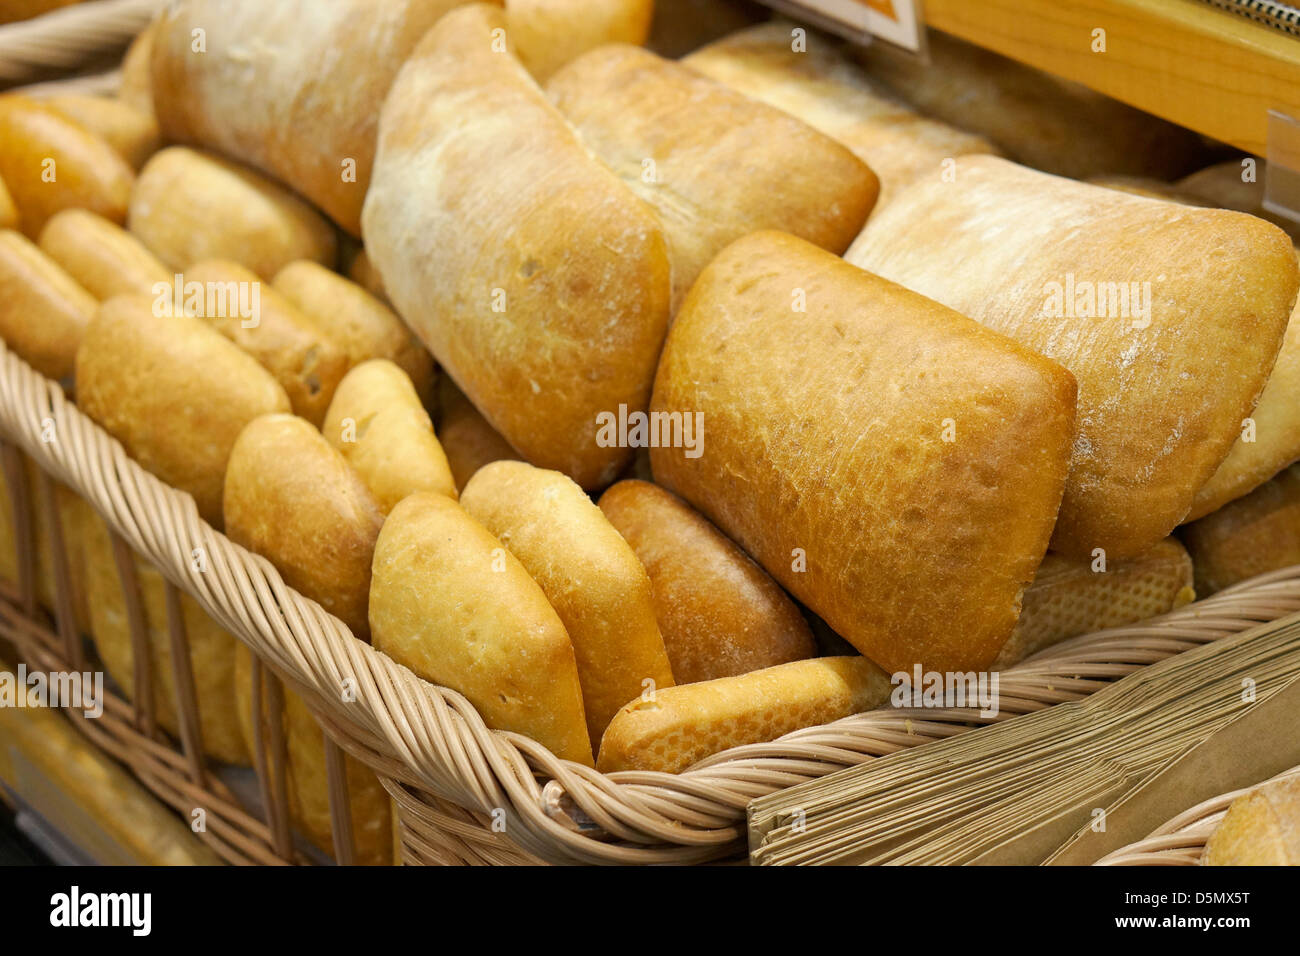 Ciabatta pane, focacce, panini, di pane in un cestino Foto Stock